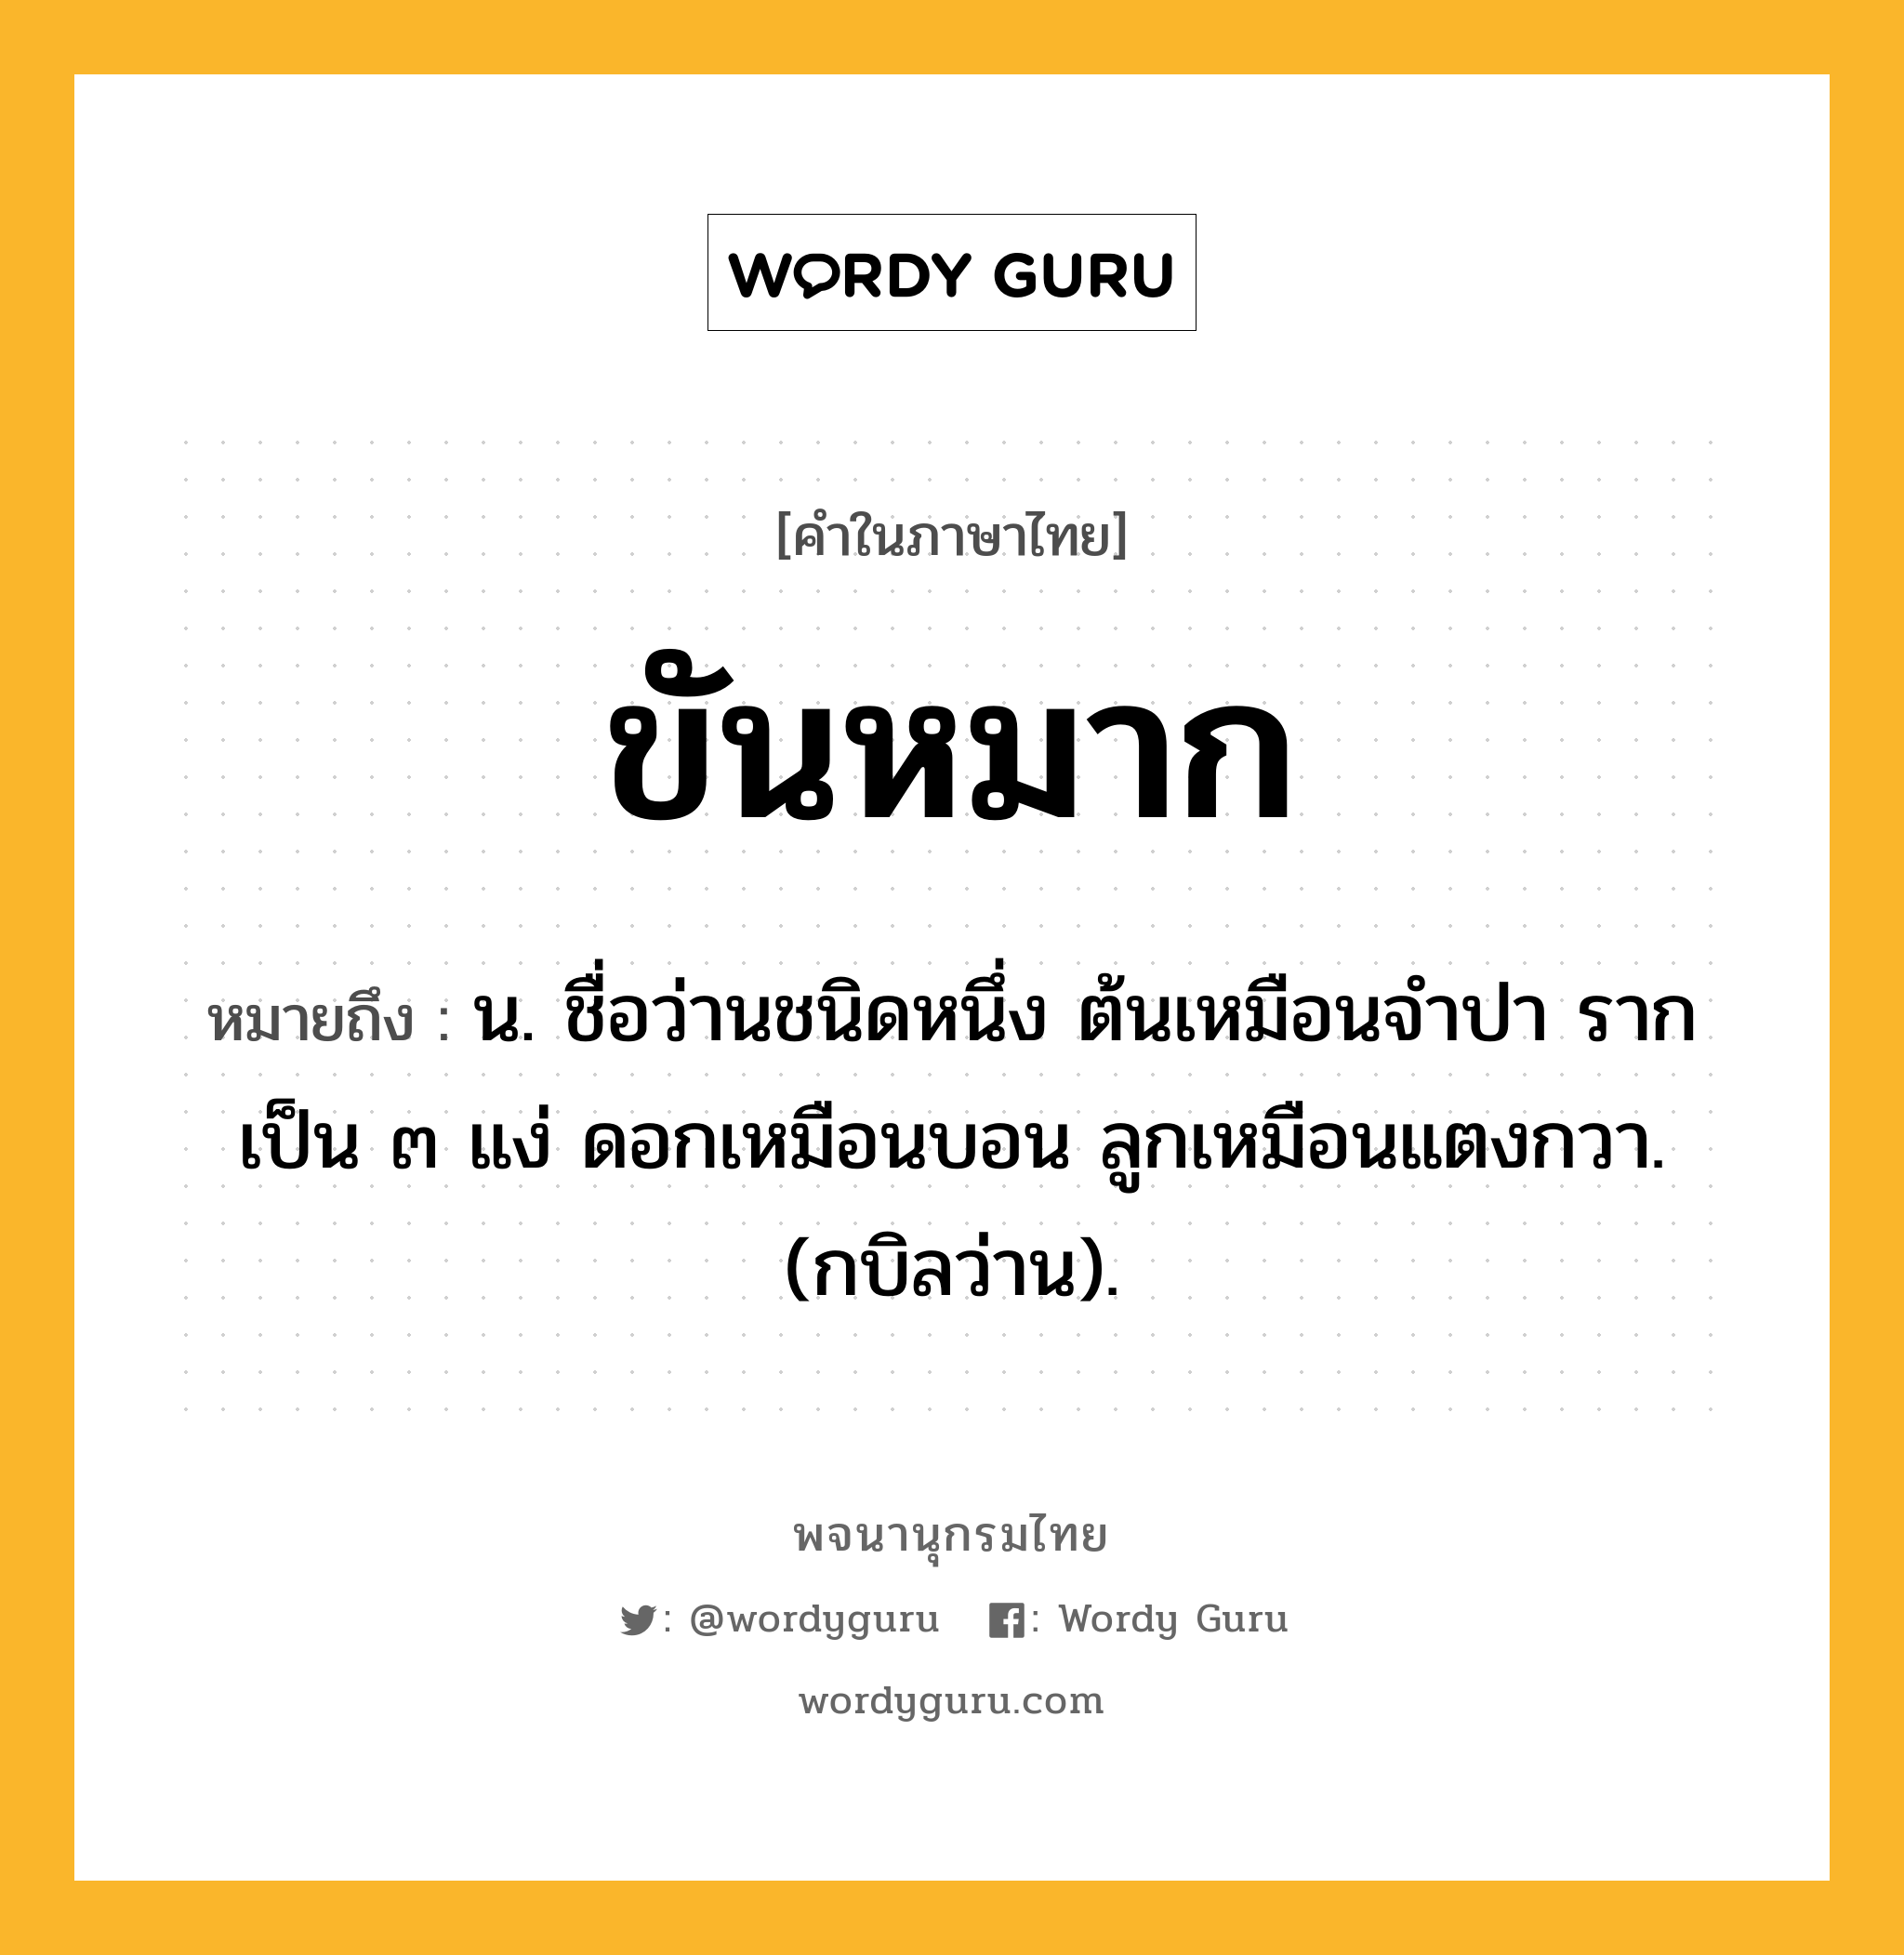 ขันหมาก ความหมาย หมายถึงอะไร?, คำในภาษาไทย ขันหมาก หมายถึง น. ชื่อว่านชนิดหนึ่ง ต้นเหมือนจําปา รากเป็น ๓ แง่ ดอกเหมือนบอน ลูกเหมือนแตงกวา. (กบิลว่าน).